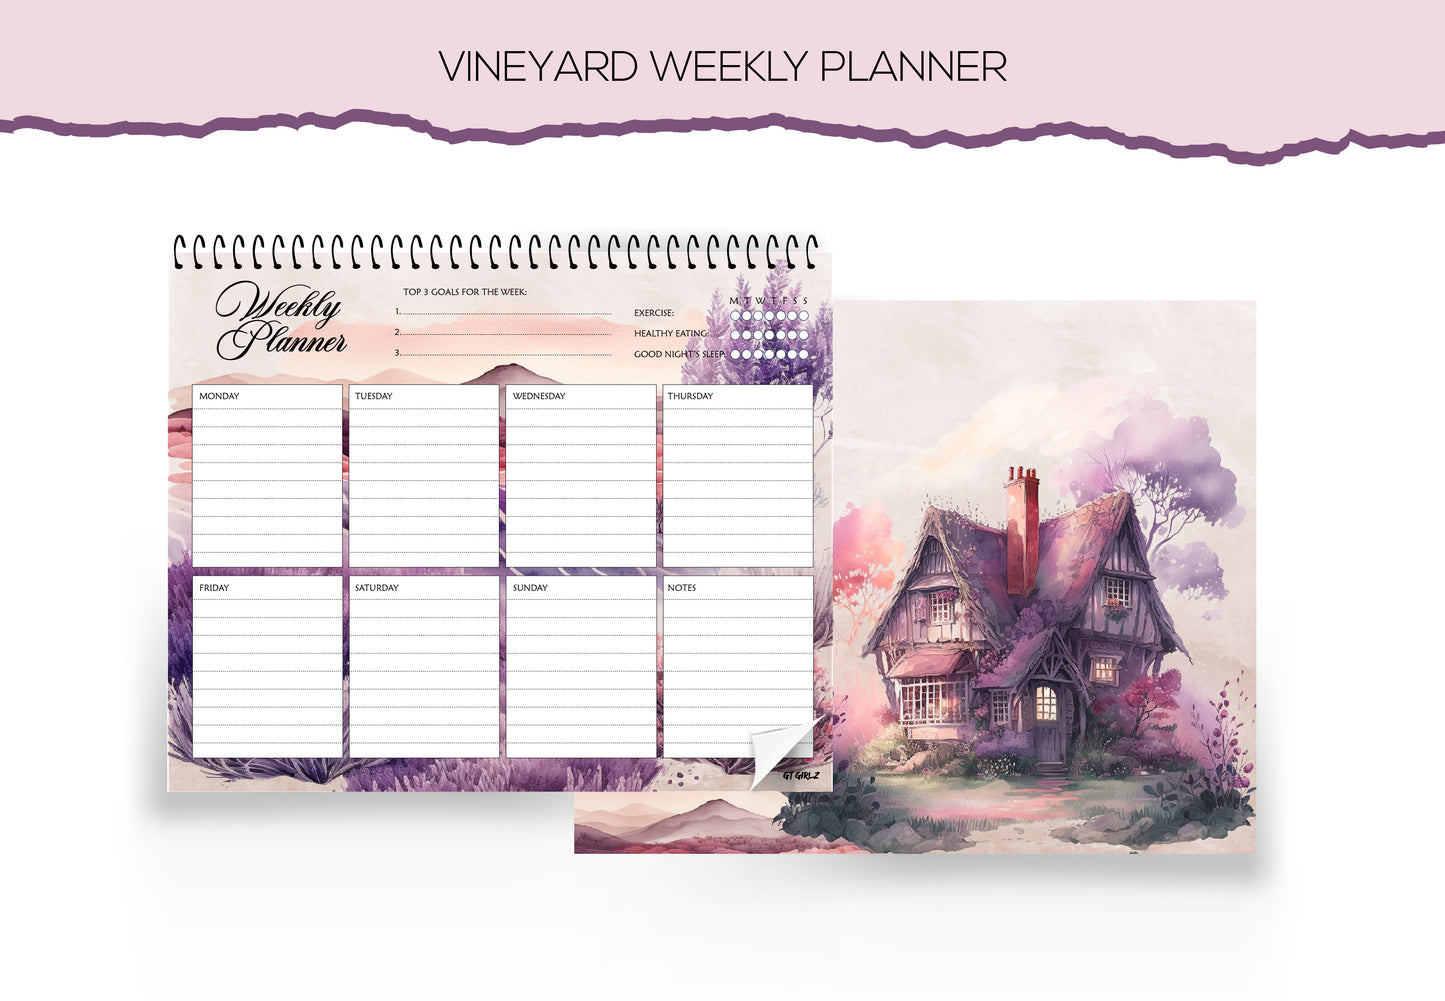 Vineyard Weekly Planner